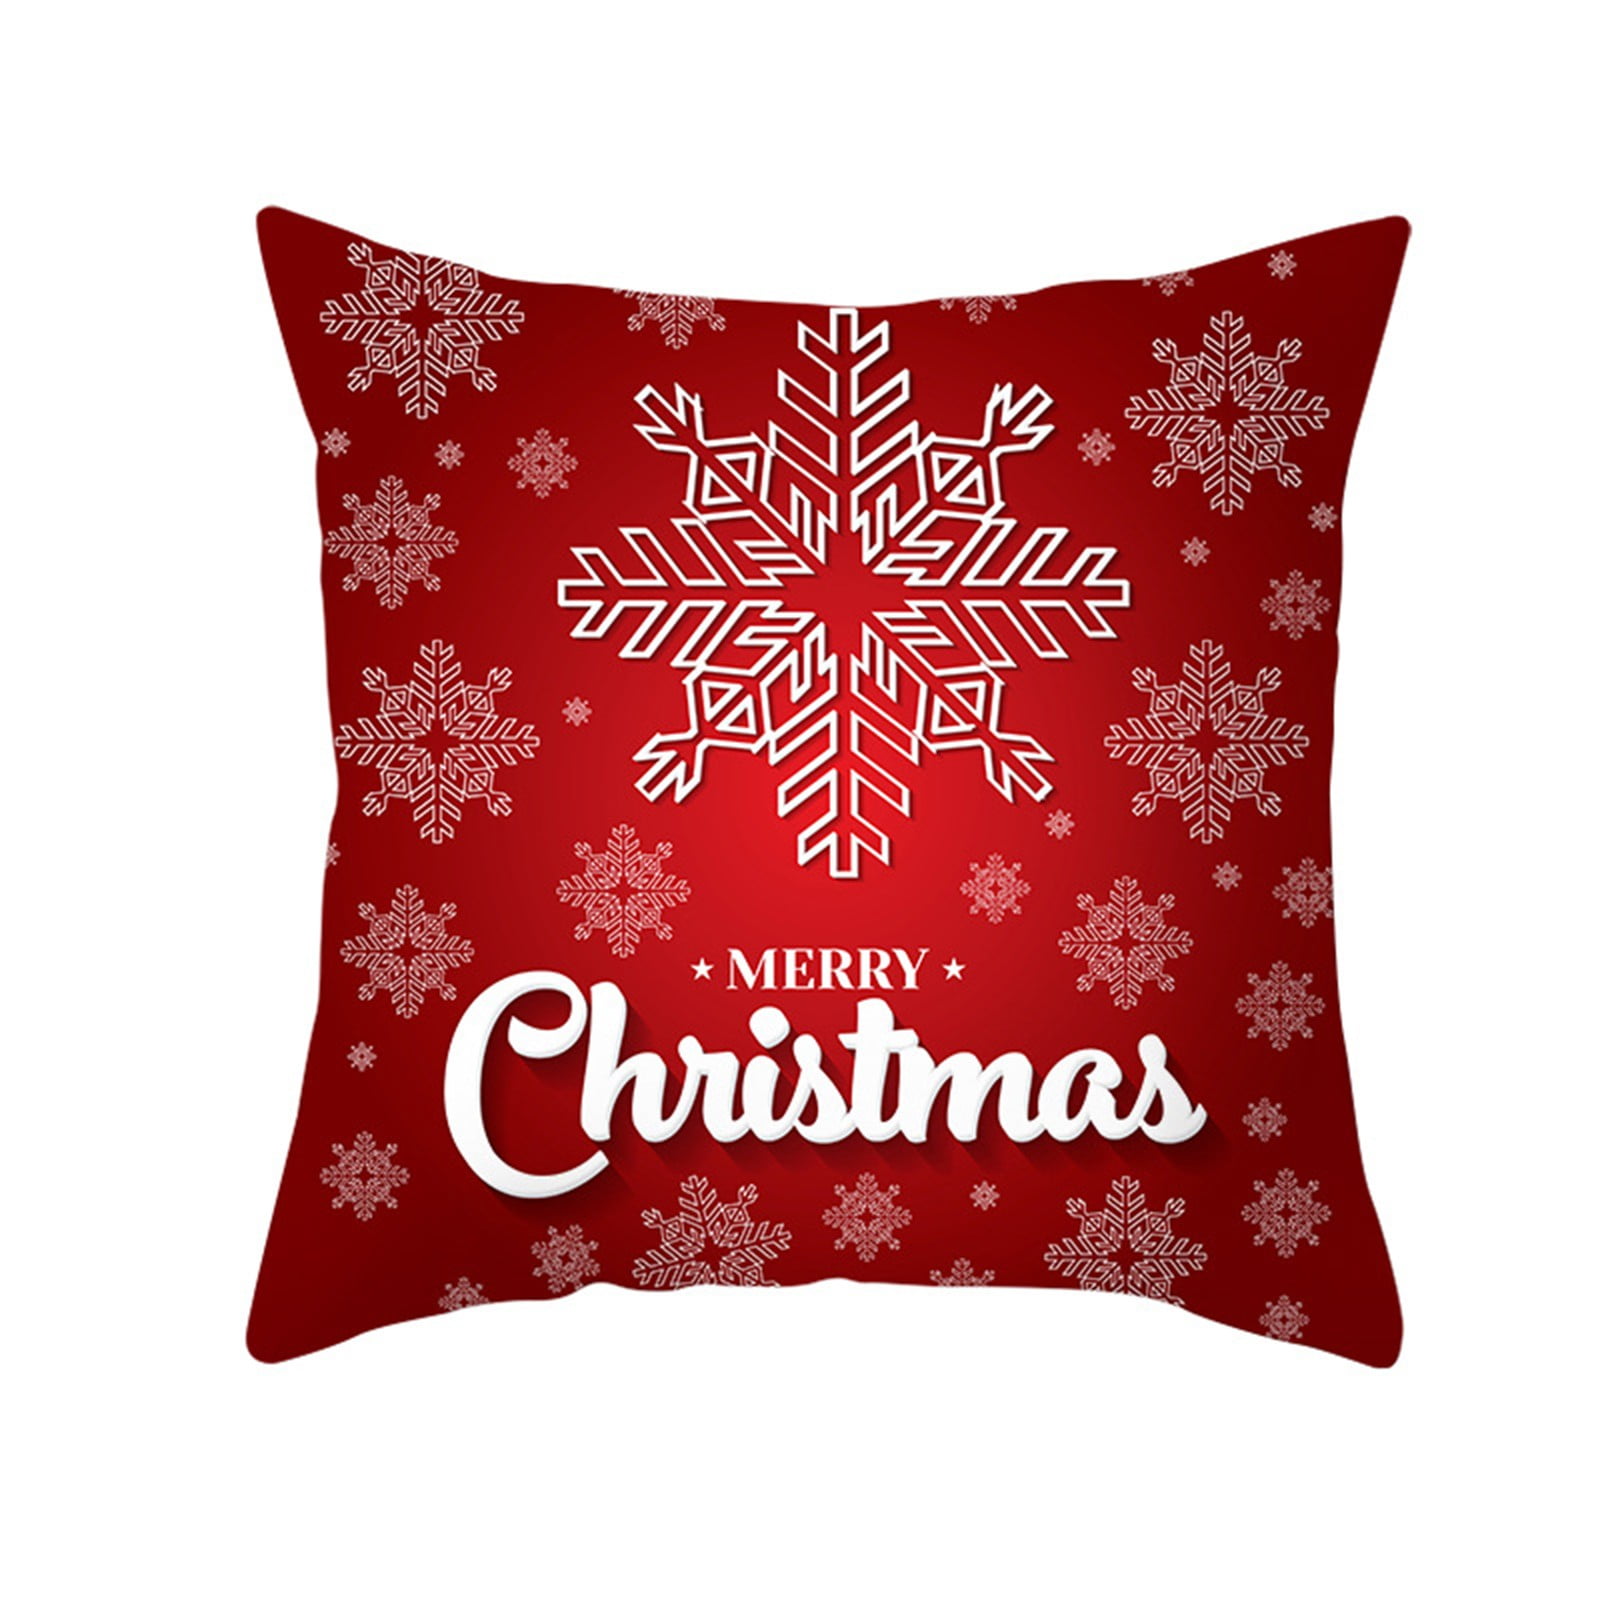 Christmas Xmas Gift Throw Pillow Case Cover Cushion Sofa Car Home Decor 2020 